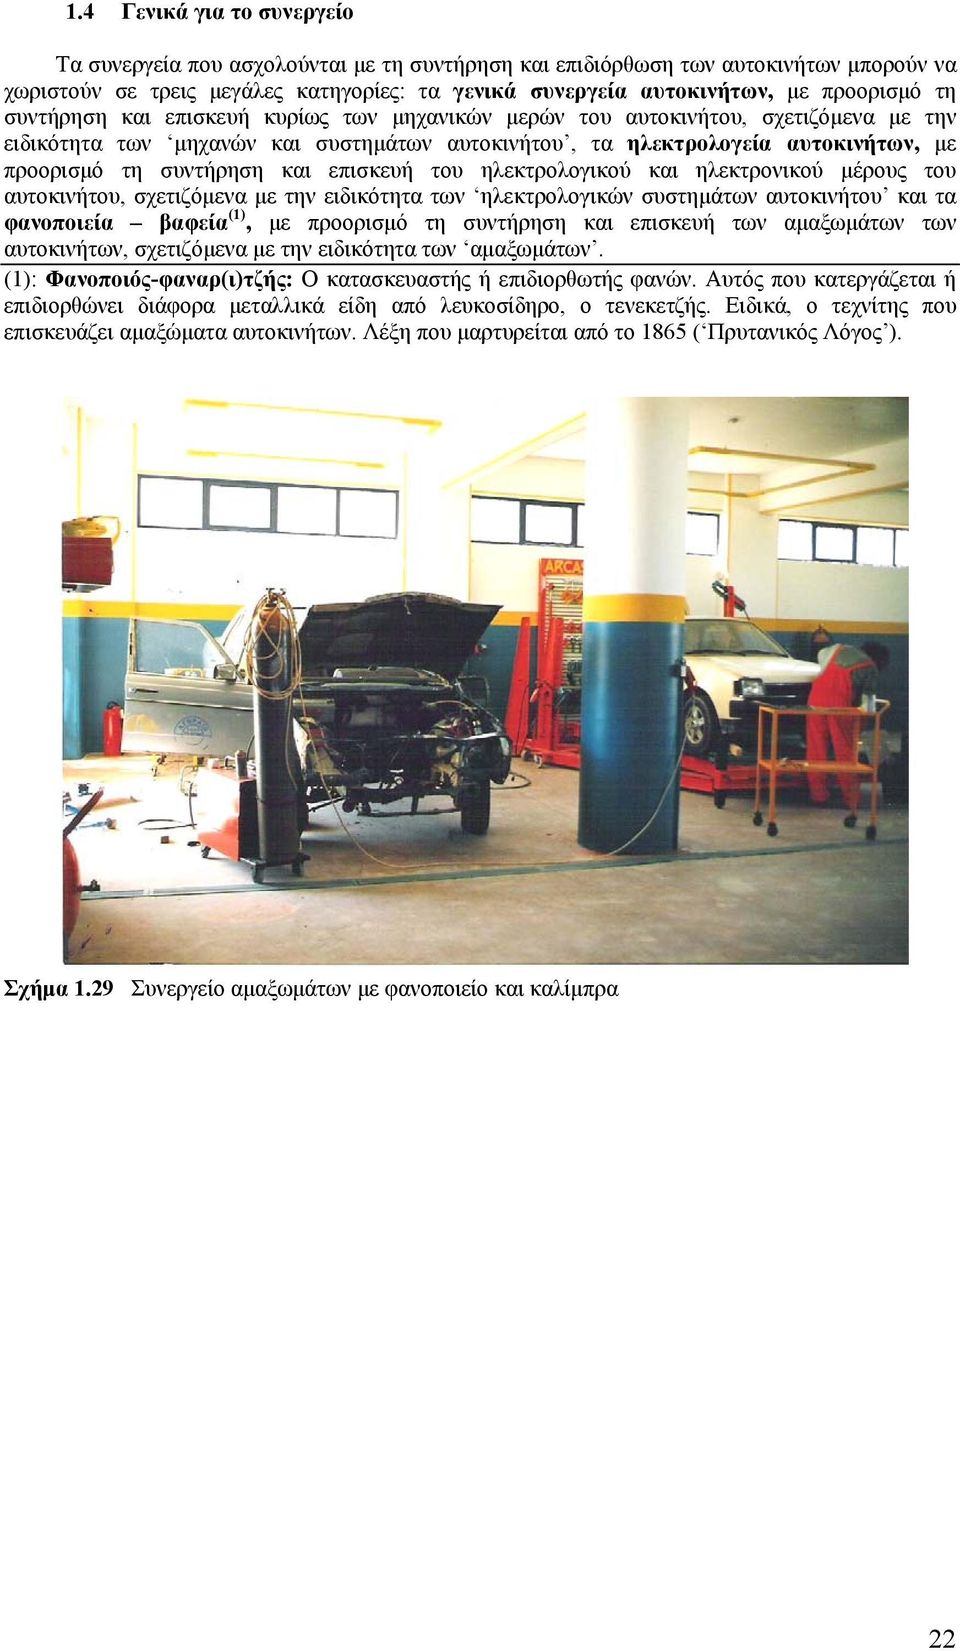 συντήρηση και επισκευή του ηλεκτρολογικού και ηλεκτρονικού μέρους του αυτοκινήτου, σχετιζόμενα με την ειδικότητα των ηλεκτρολογικών συστημάτων αυτοκινήτου και τα φανοποιεία βαφεία (1), με προορισμό